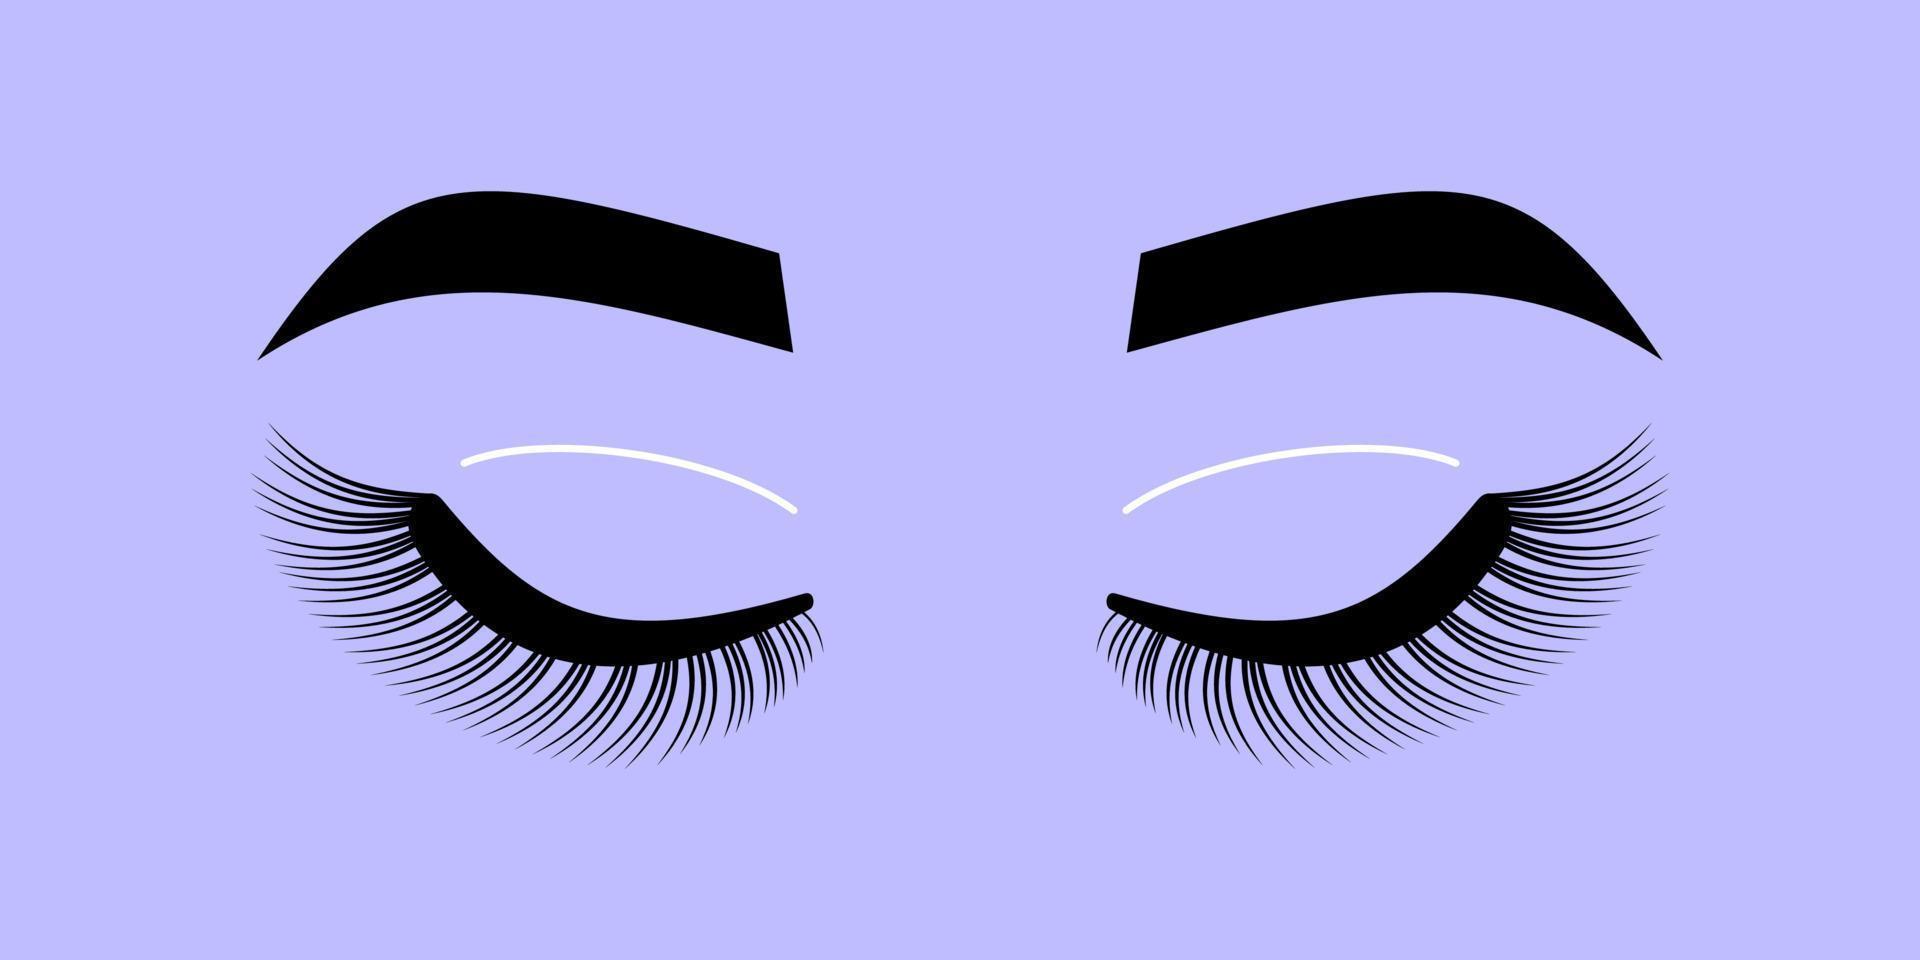 kvinnliga ögon ser ut. ögonfransar och ögonbryn. makeup - vektorillustration isolerad på vit bakgrund. kosmetika för kvinnor vektor